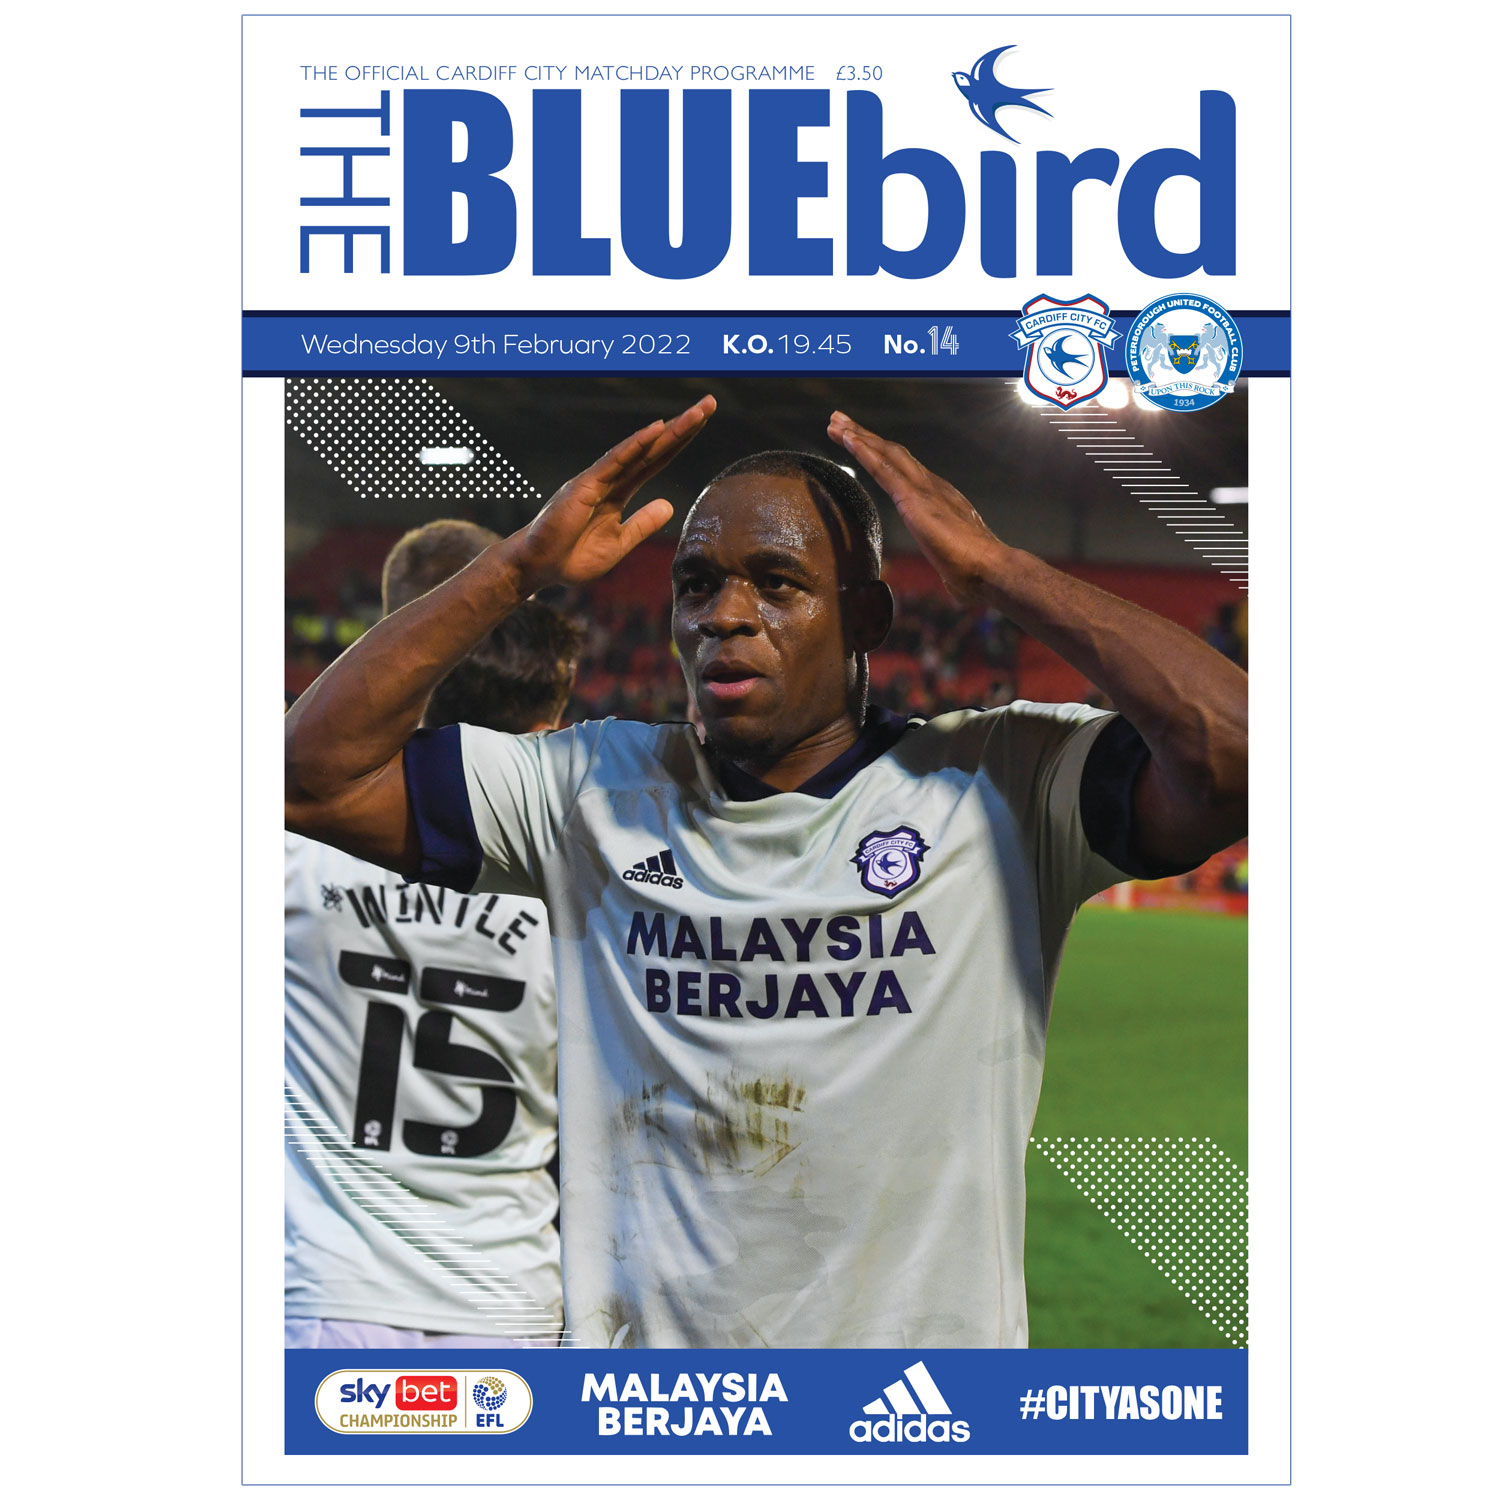 The Bluebird - Official Matchday Programme